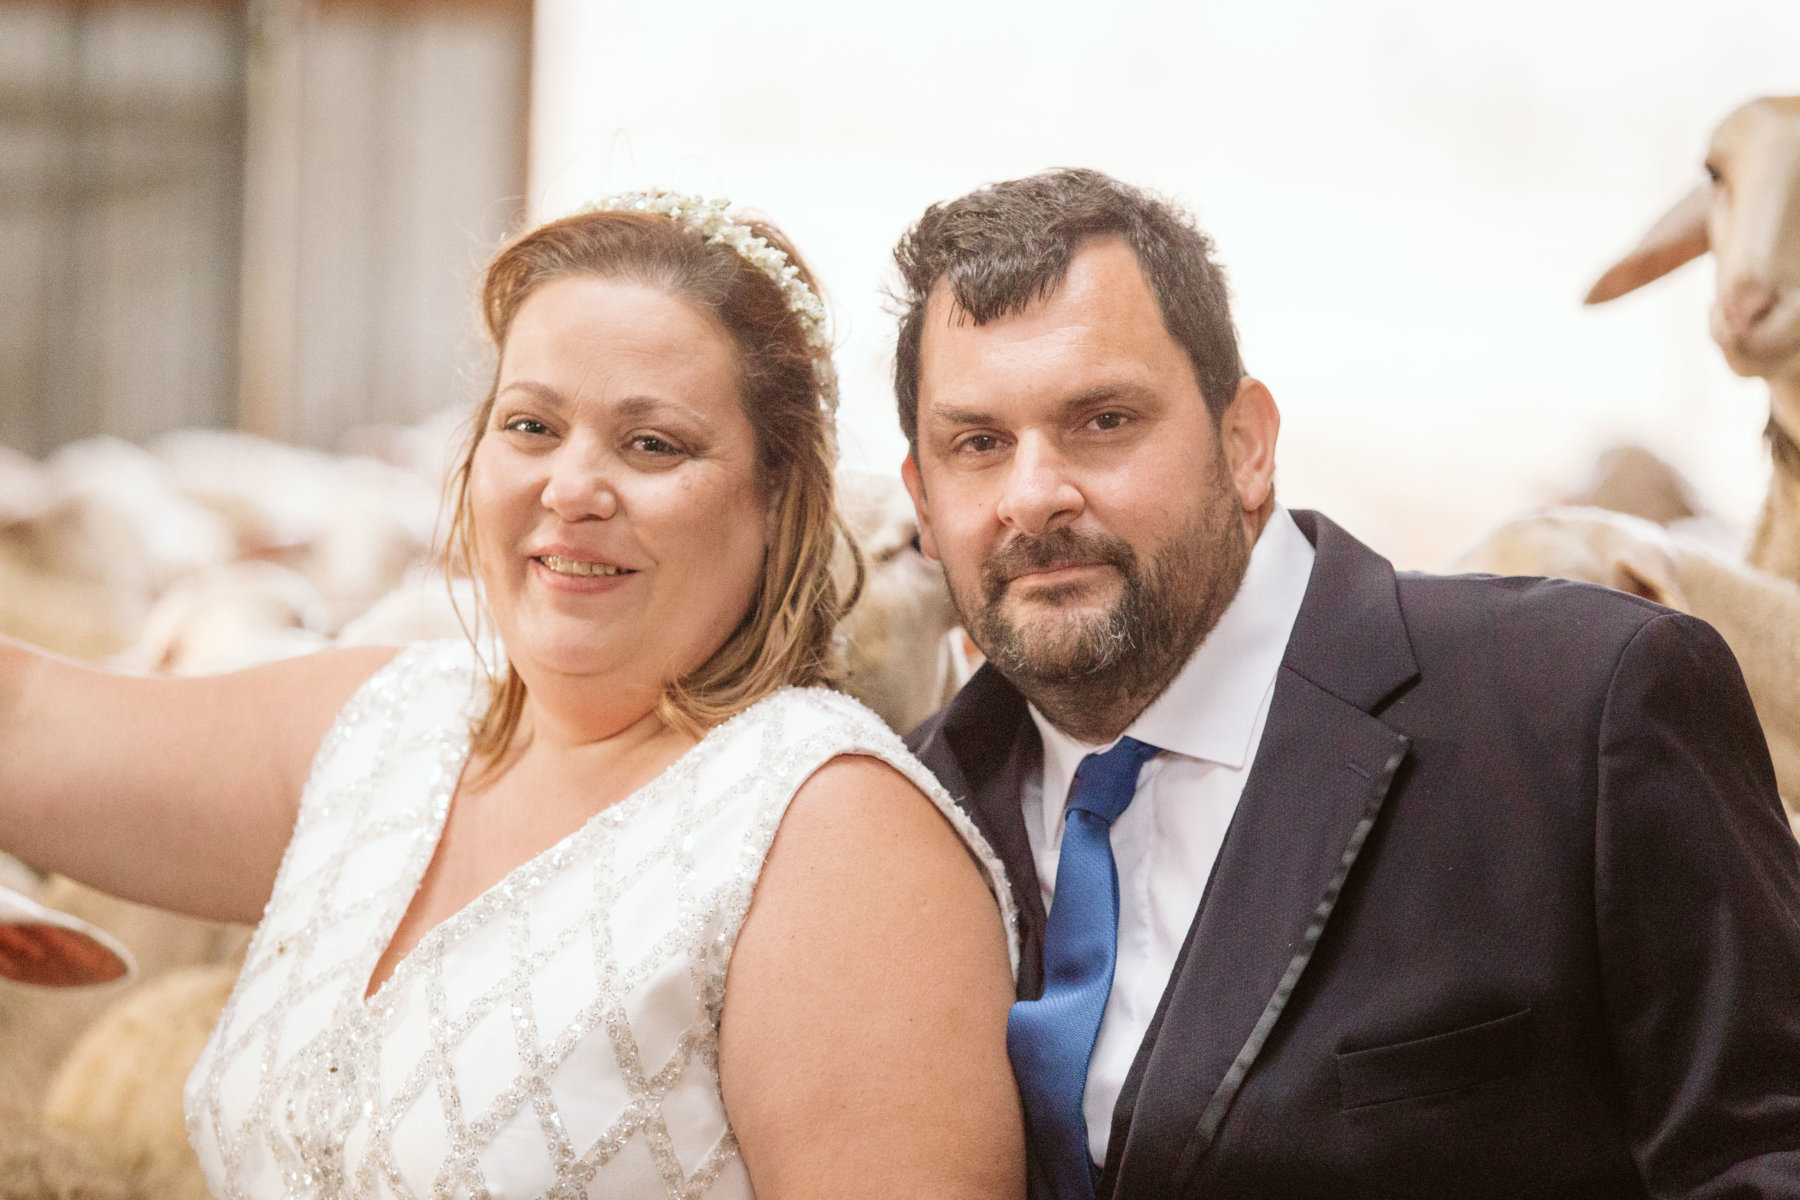 Λήμνος: Η γαμήλια φωτογράφιση που γίνεται viral – Γαμπρός και νύφη μέσα σε στάνη